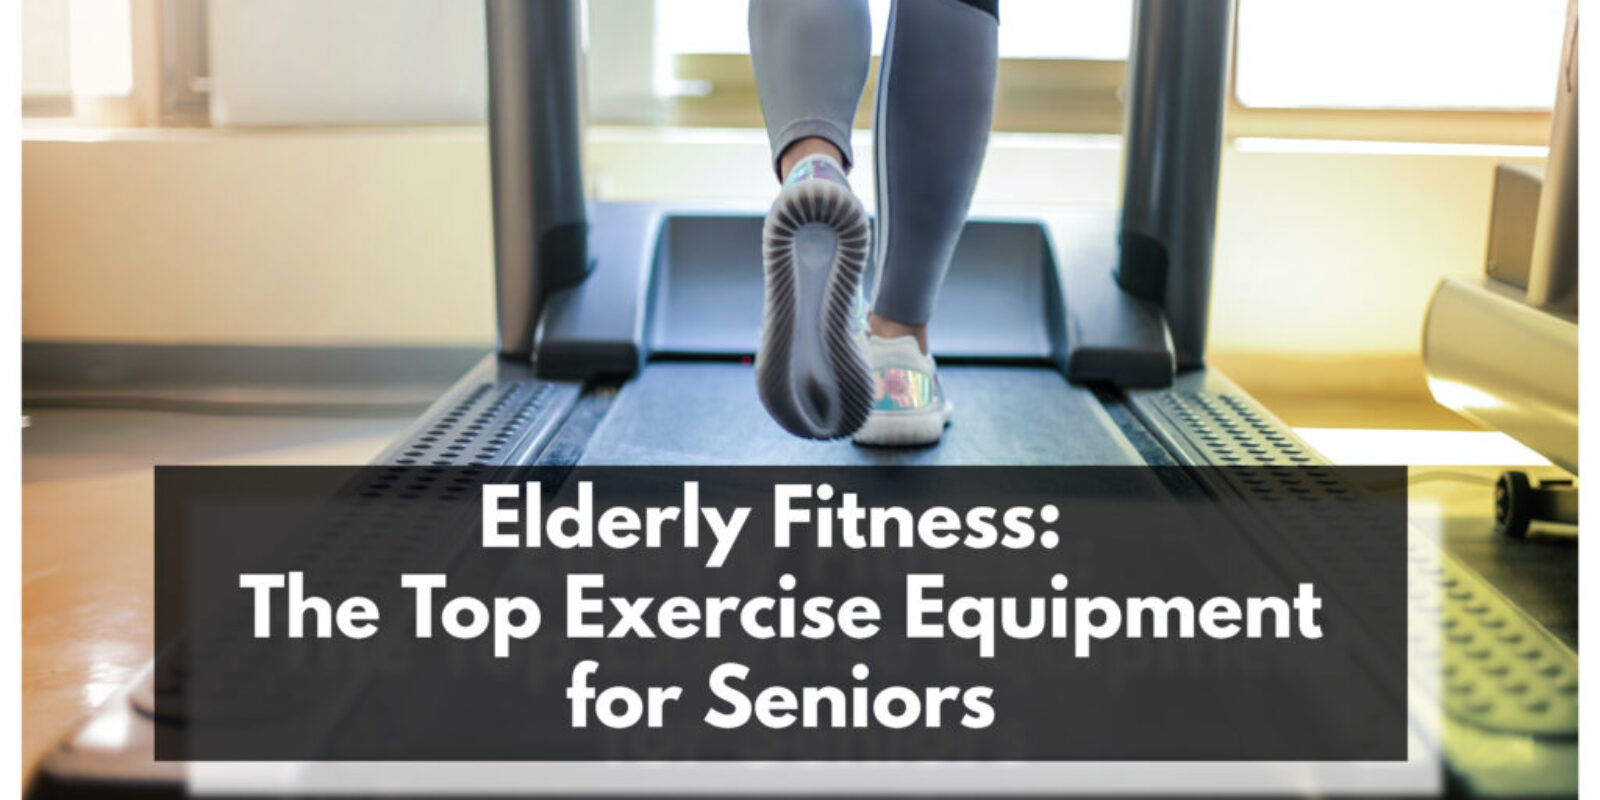 Elderly Fitness: The Top Exercise Equipment for Seniors